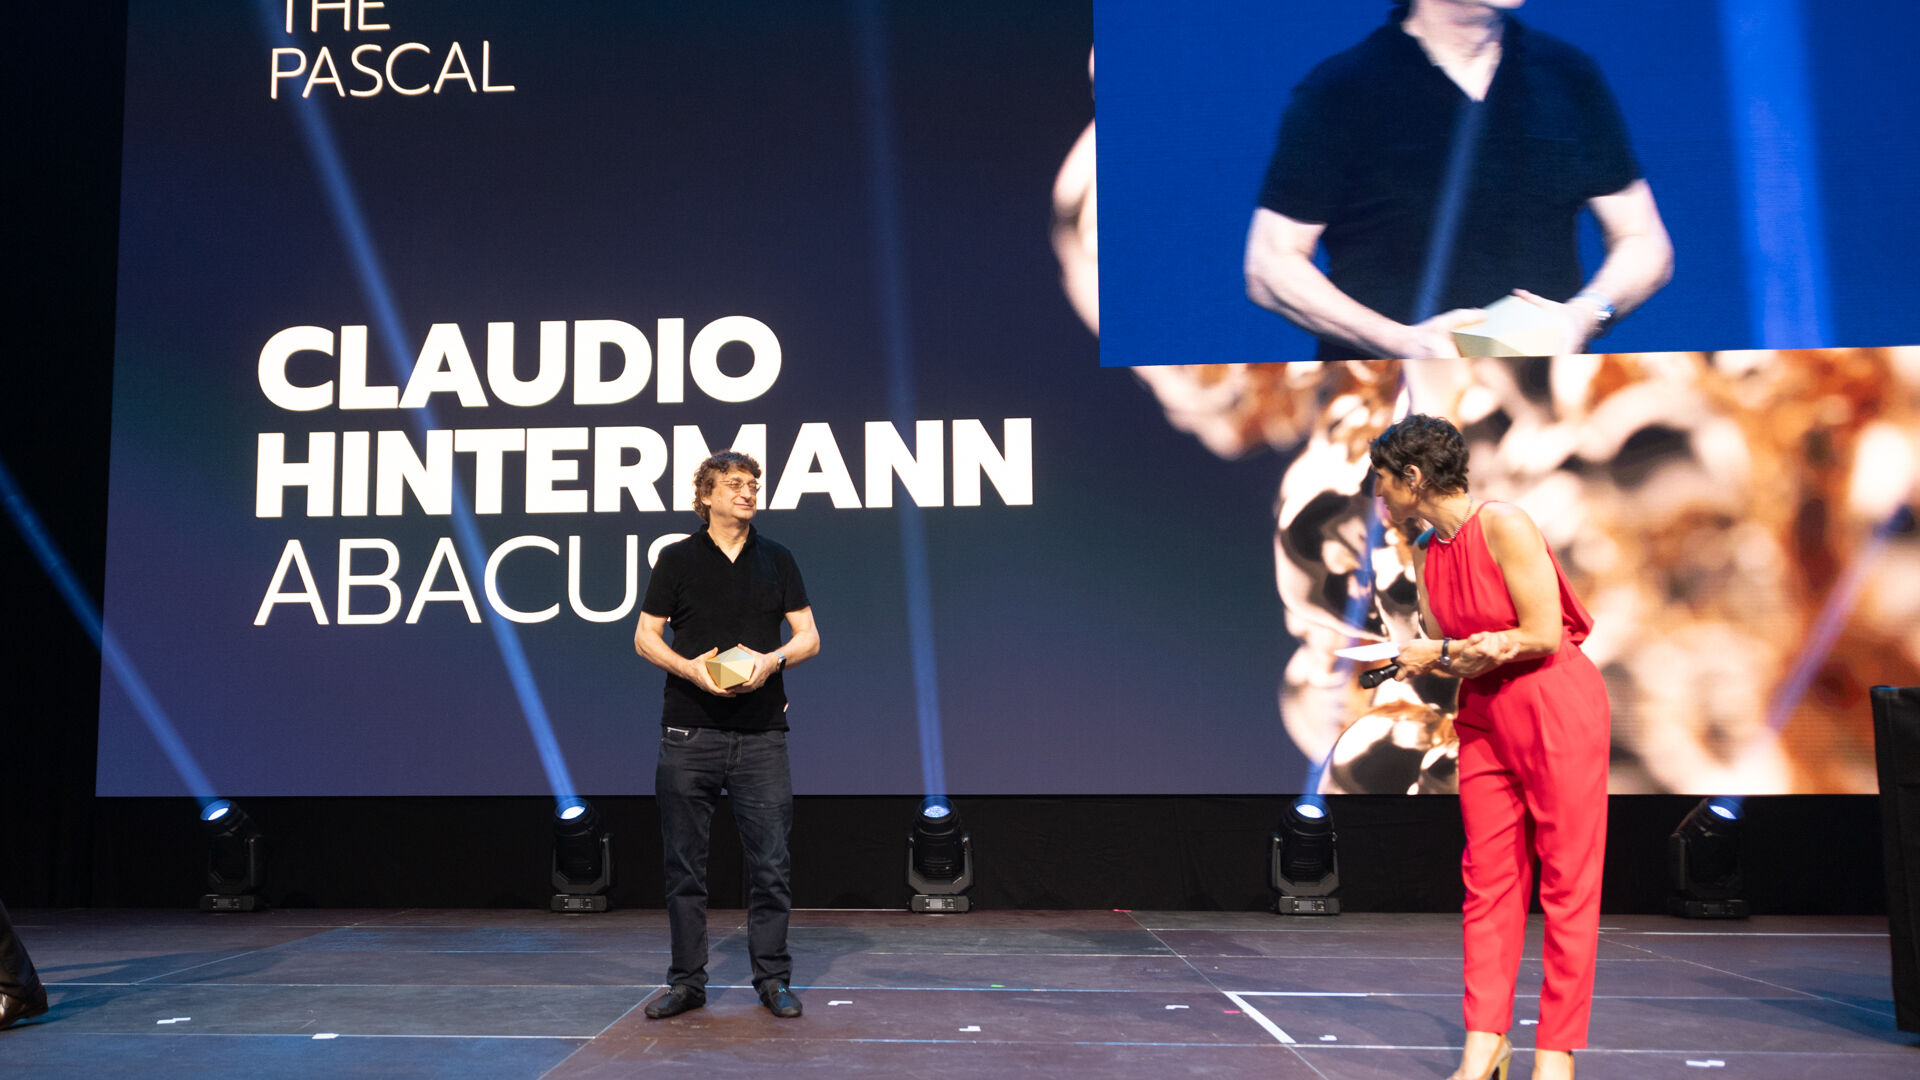 Թվային տնտեսության մրցանակ. 2023 թվականի մրցանակների շնորհանդեսը տեղի ունեցավ Շվեյցարիայի Ցյուրիխ քաղաքի Hallenstadion-ում նոյեմբերի 16-ին։